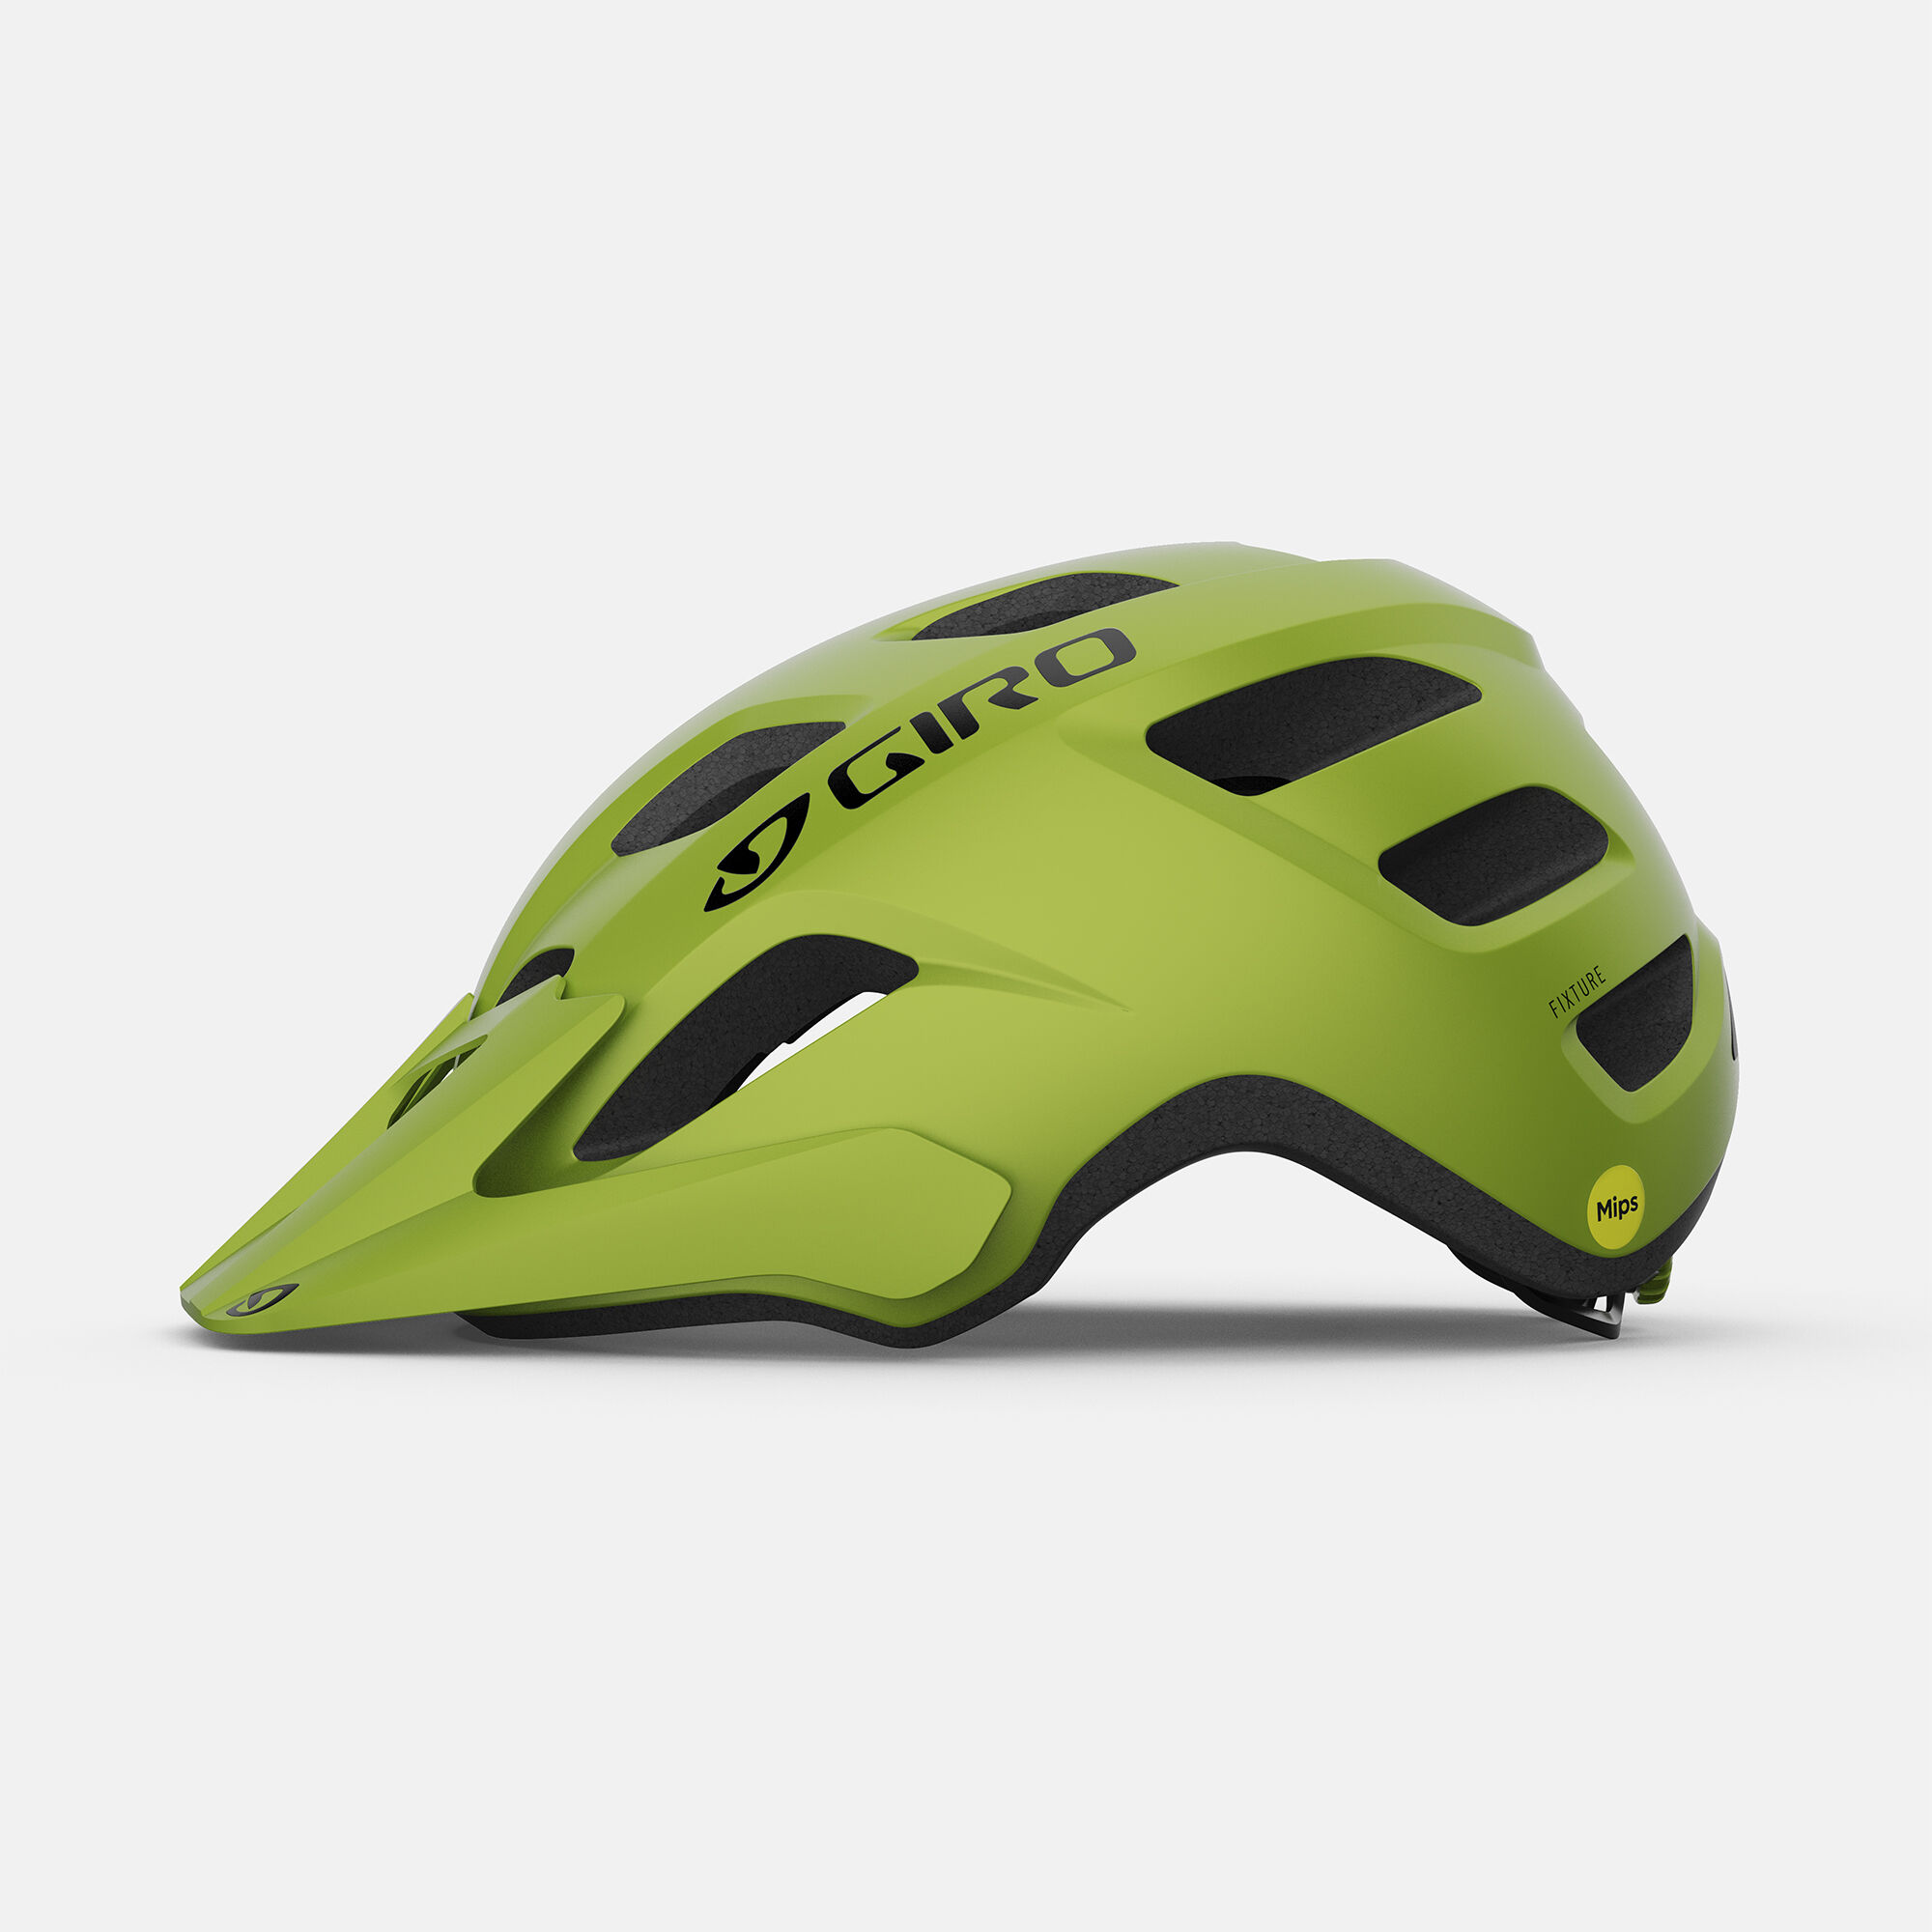 Giro Fixture MIPS Bike Helmet Universal Adult 54-61 Cm Matte Black 2021 for sale online 